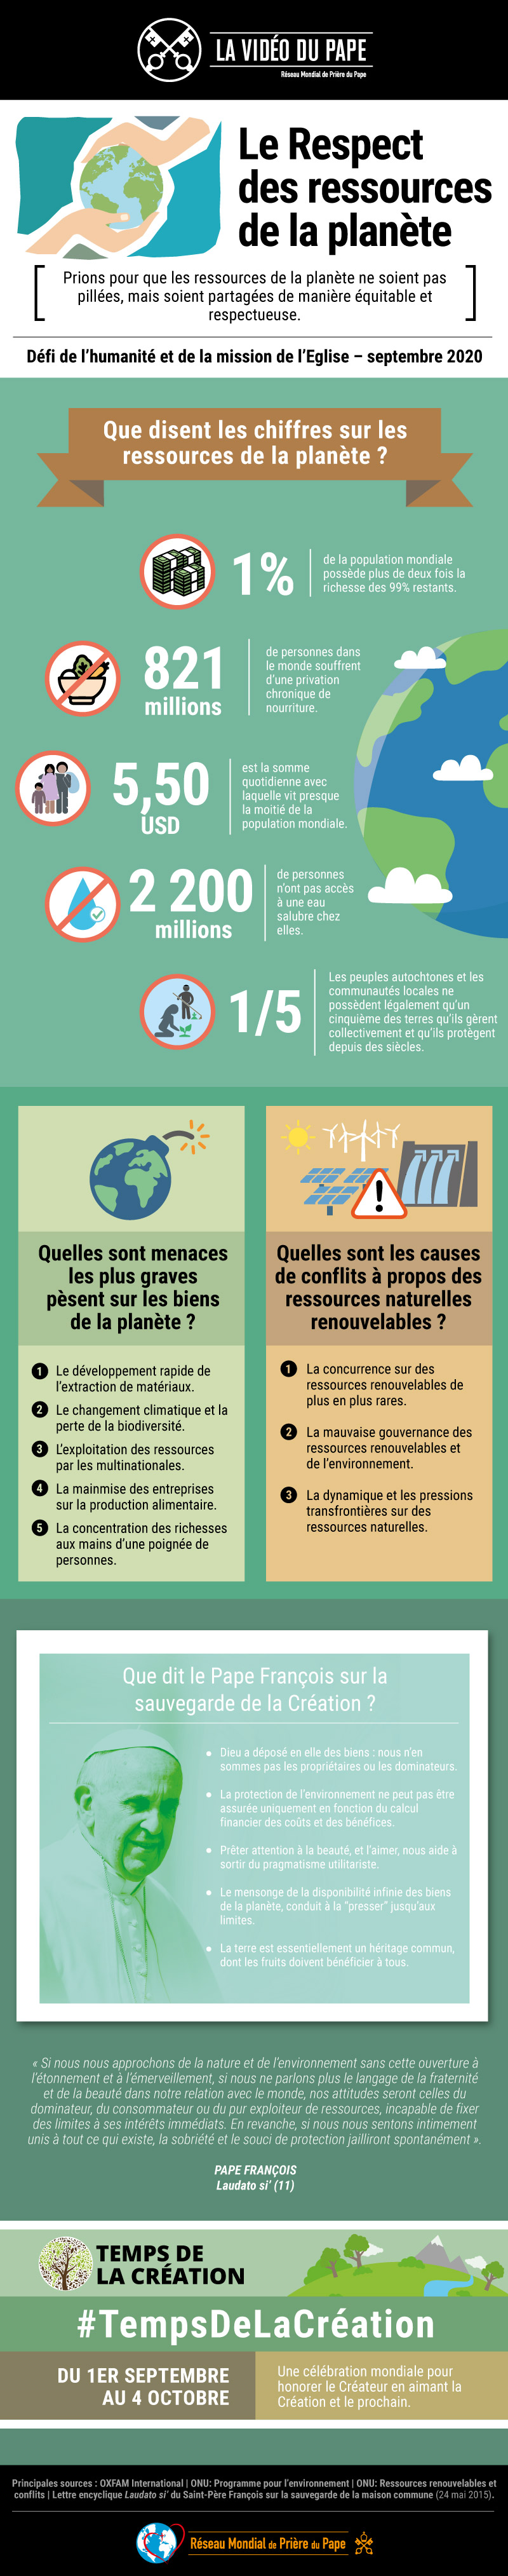 Infographie-TPV-9-2020-FR-La-Vidéo-du-Pape-Respect-des-ressources-de-la-planéte.jpg